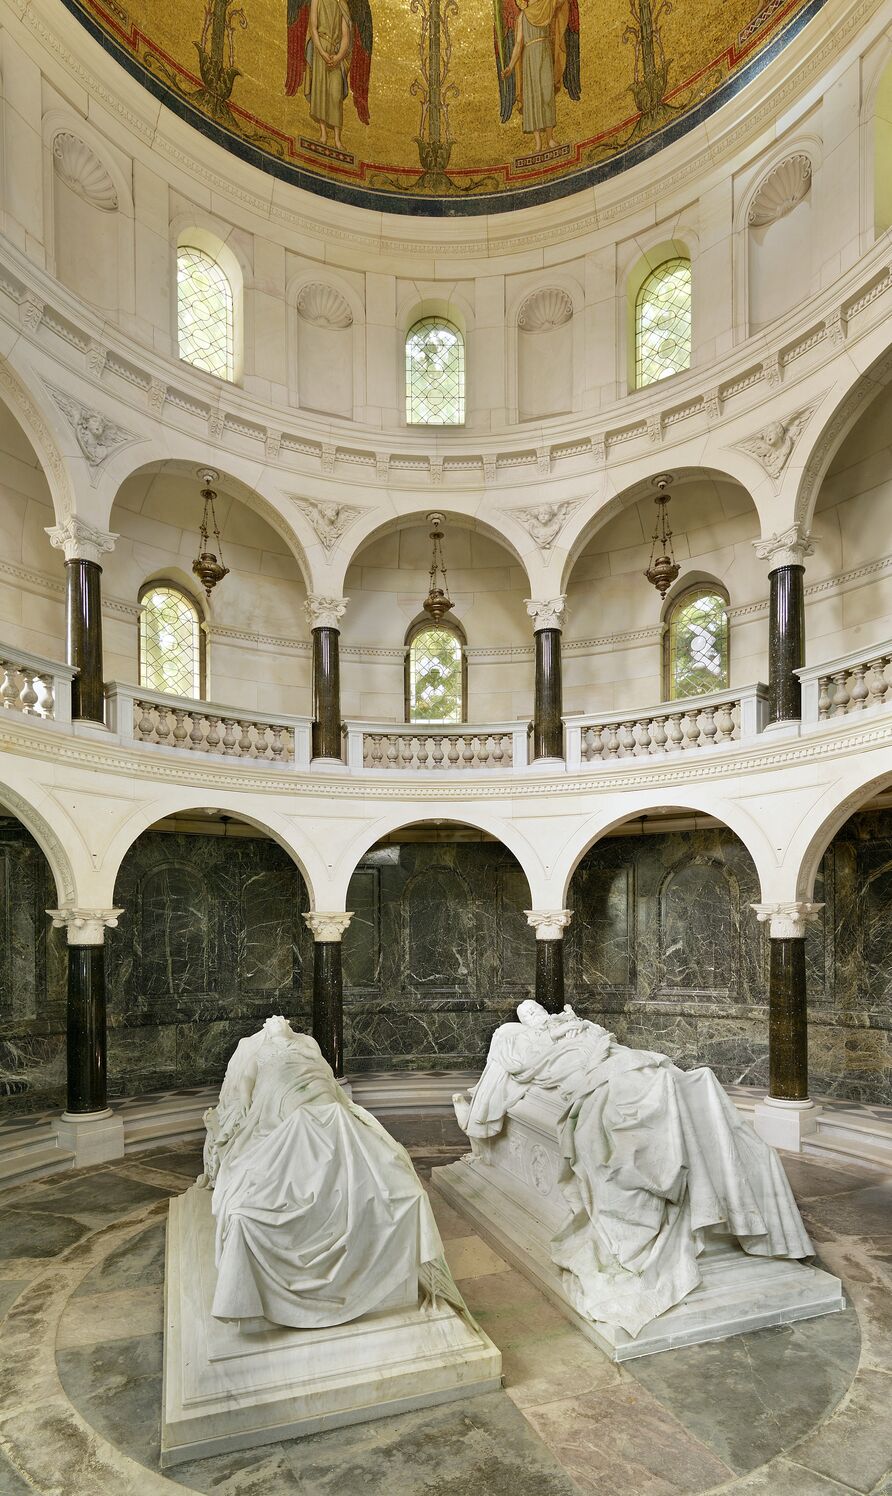 Kaiser-Friedrich-Mausoleum, Blick in das Innere mit beiden Sarkophagen